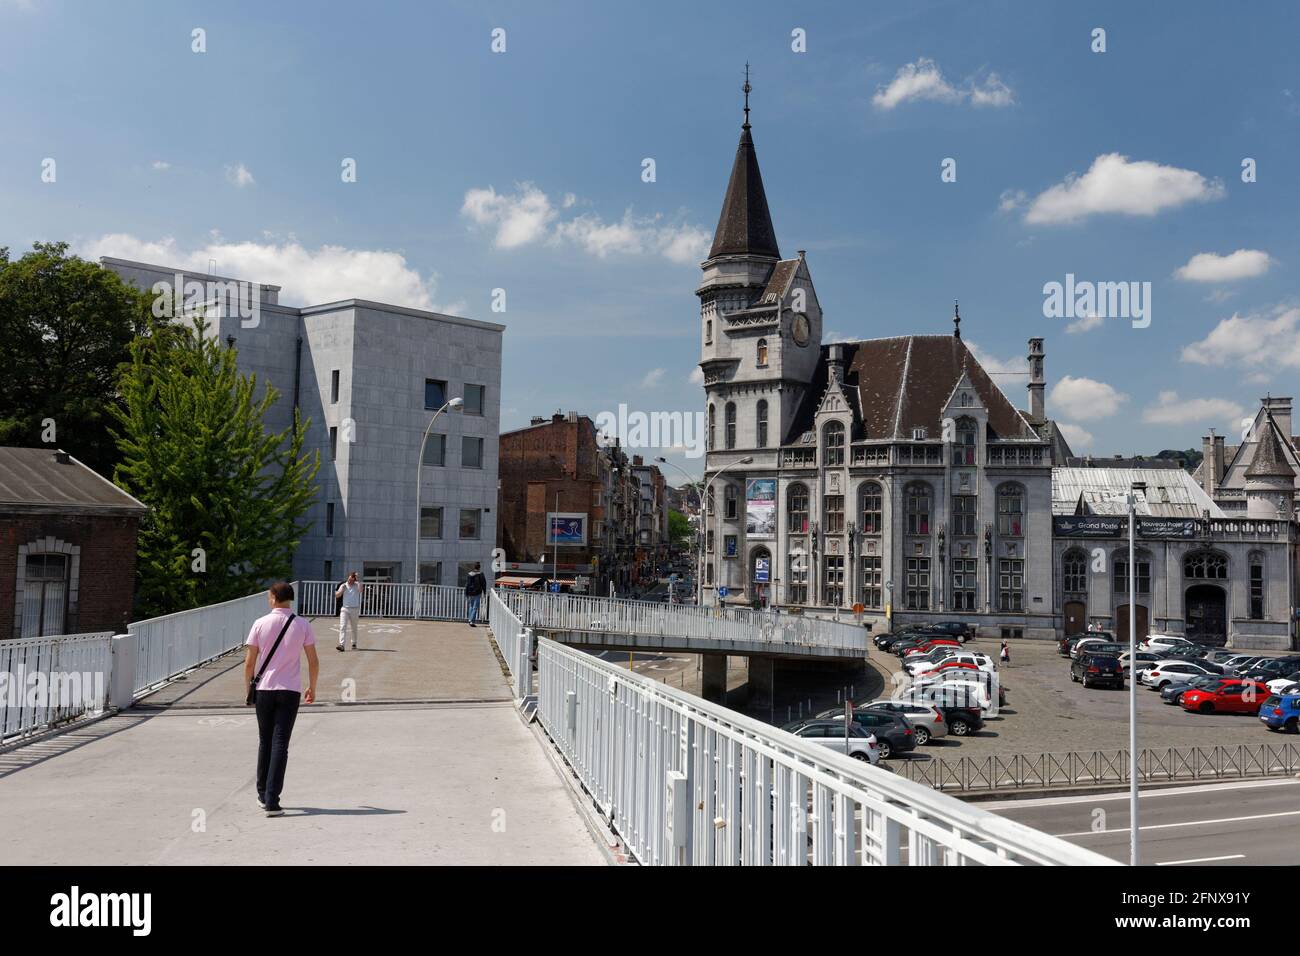 La passerelle Saucy et la grand poste de Liège, Belgique Stock Photo